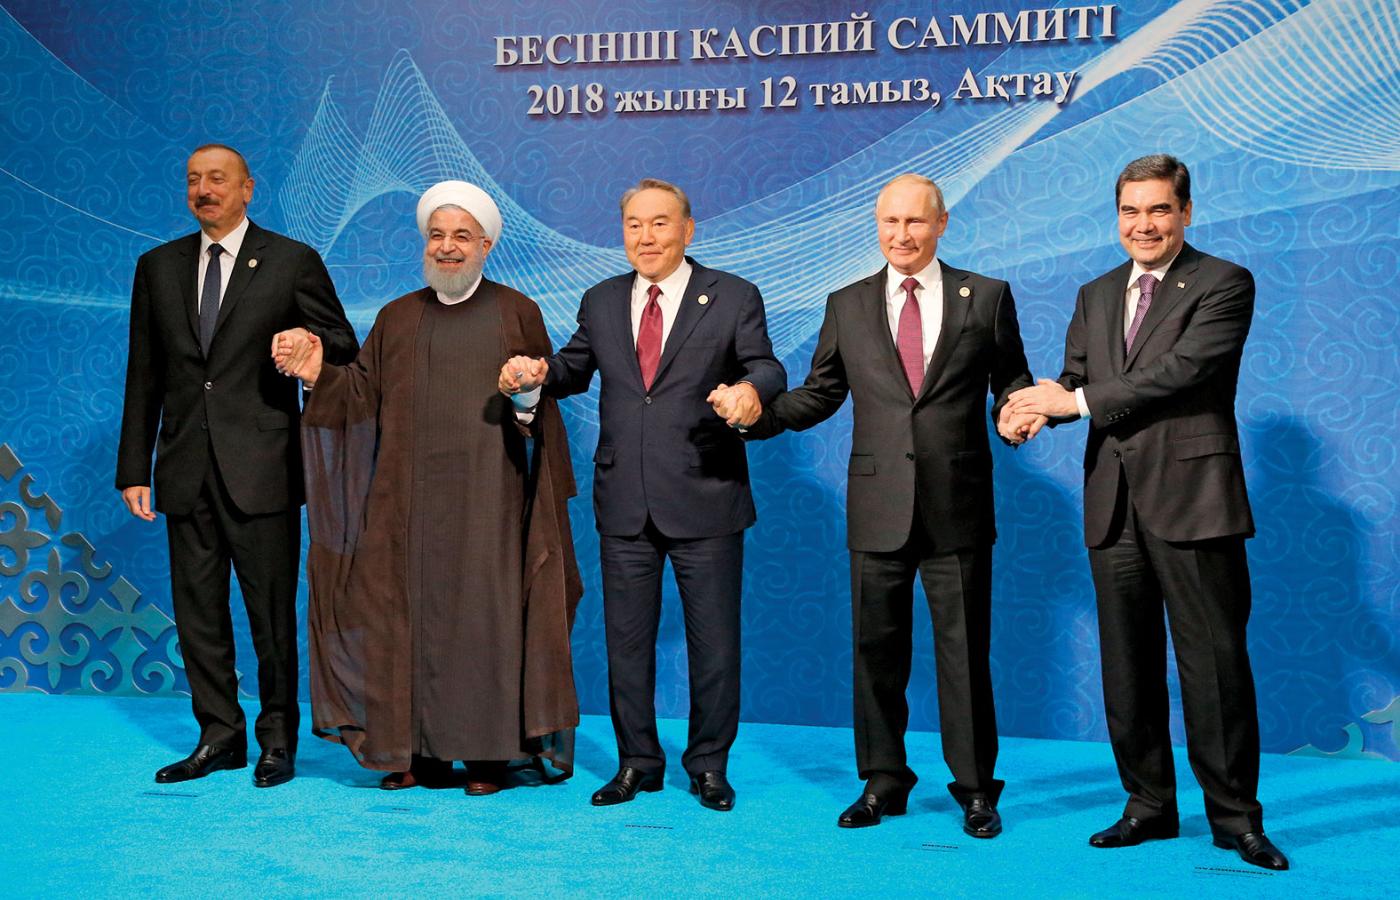 Prezydenci: Ilham Alijew, Hasan Rohani, Nursułtan Nazarbajew, Władimir Putin i Gurbanguli Berdimuhamedow podczas szczytu państw nadkaspijskich w kazachskim Aktau,12 sierpnia 2018 r.